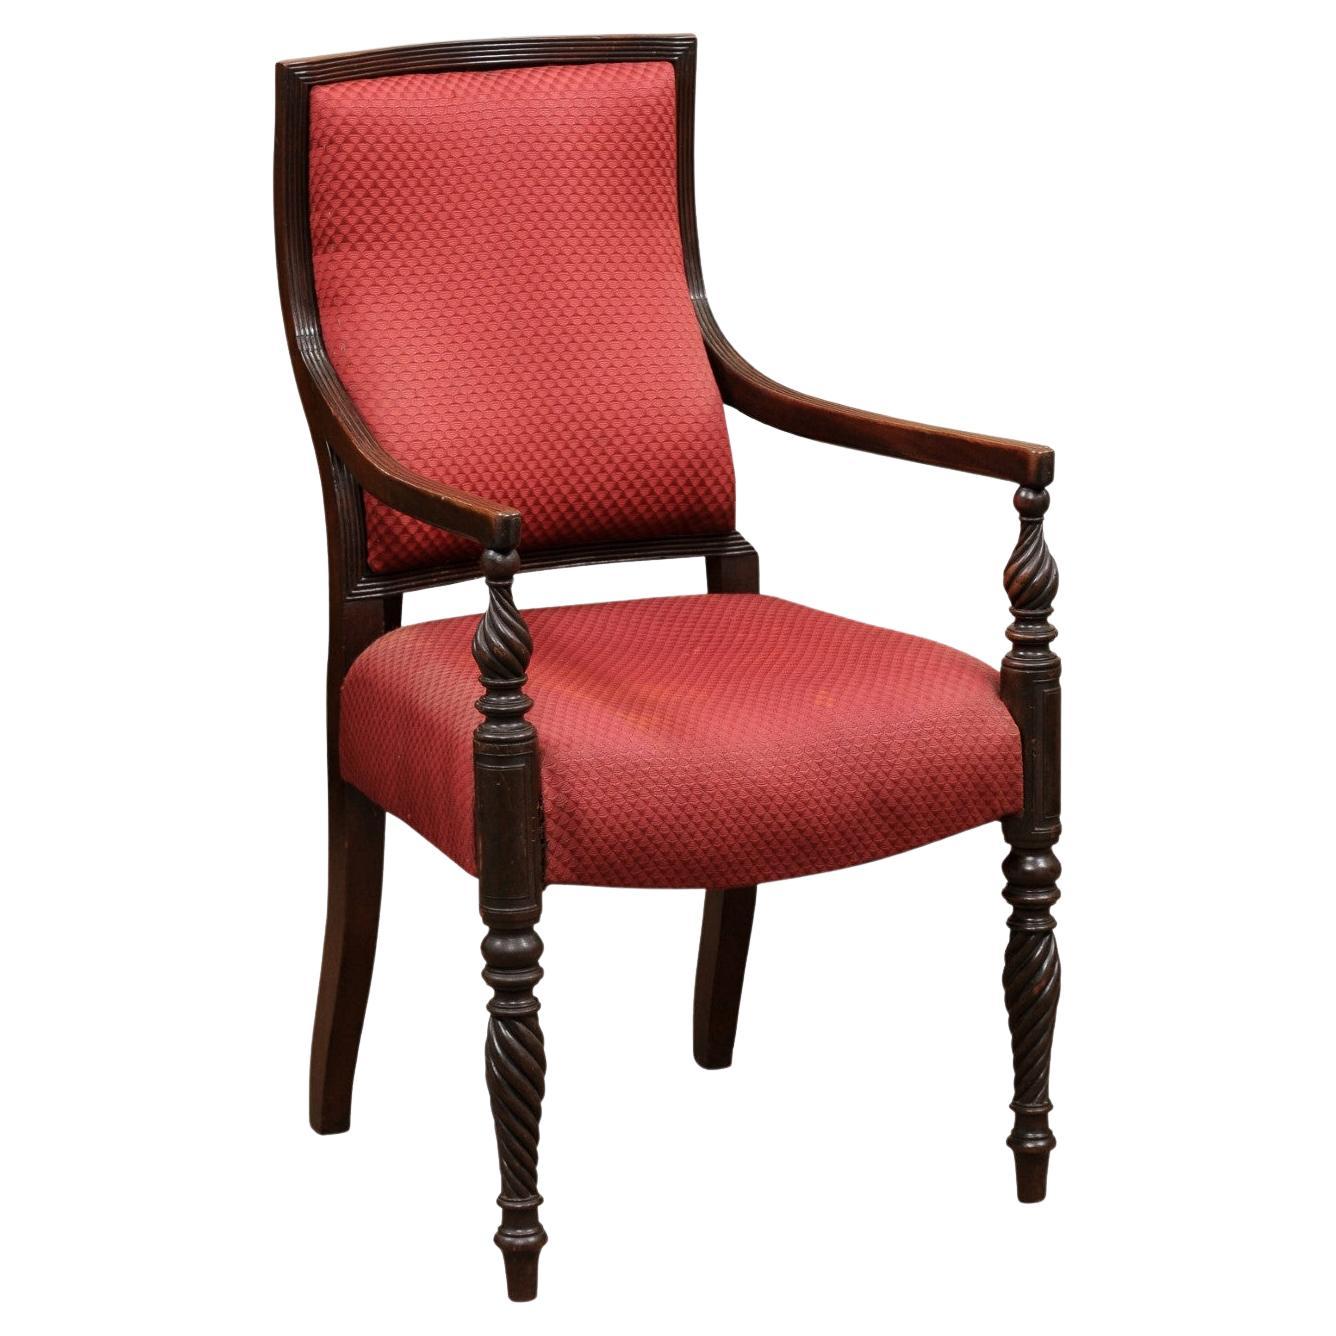 Grand fauteuil en acajou de style Régence anglaise du 19ème siècle